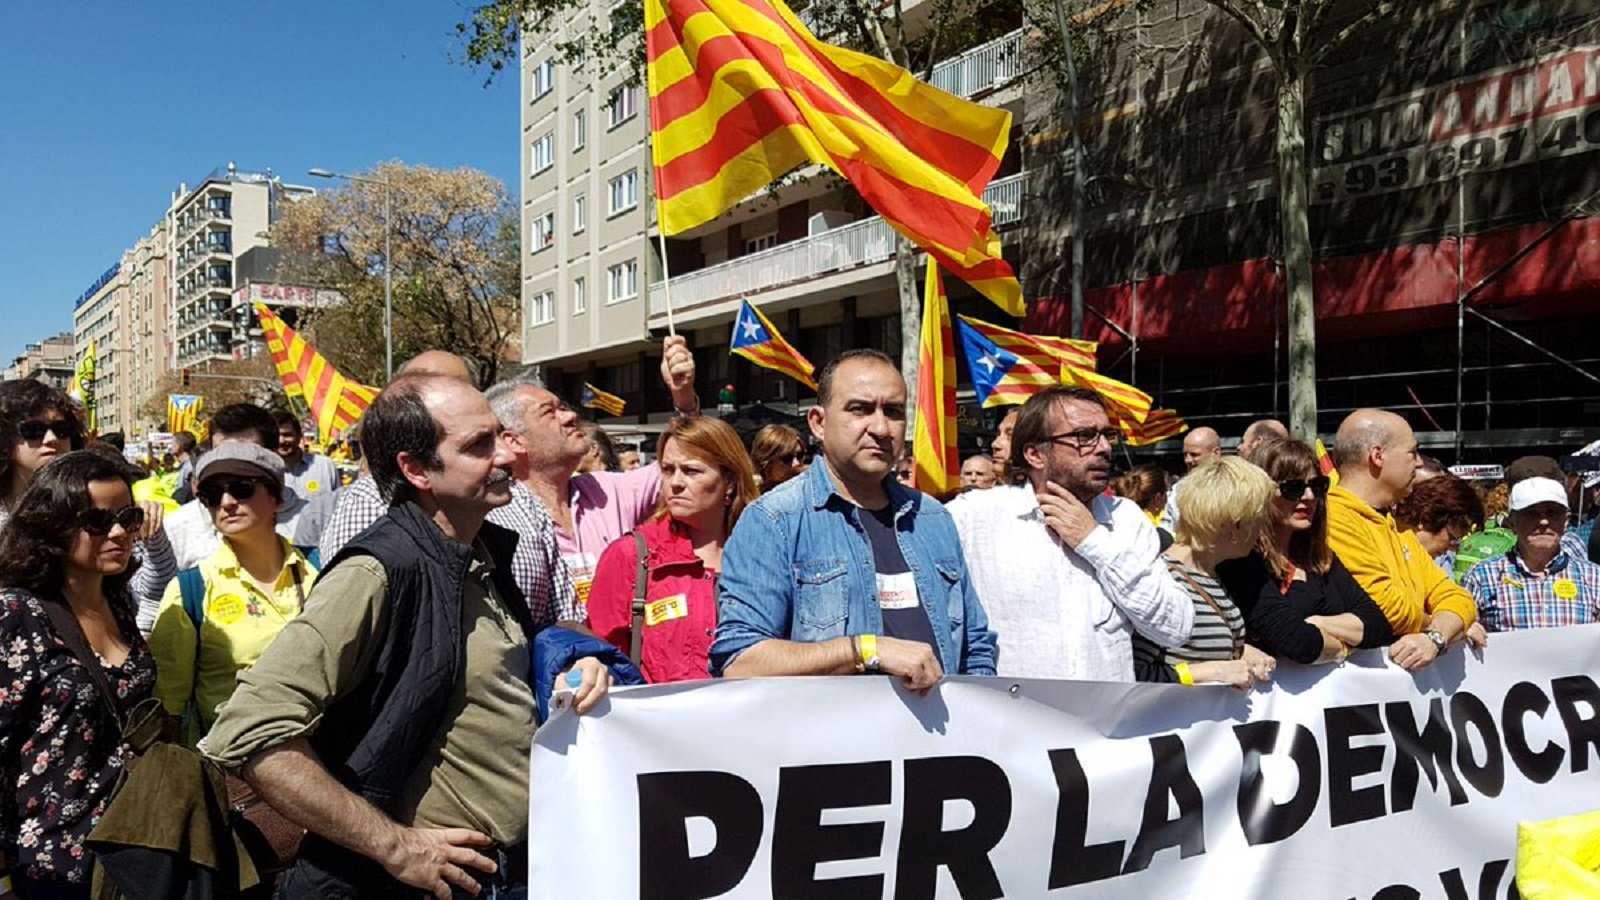 Els diaris de Madrid exigeixen la dimissió de Pacheco i Ros per la seva "traïció" a Espanya